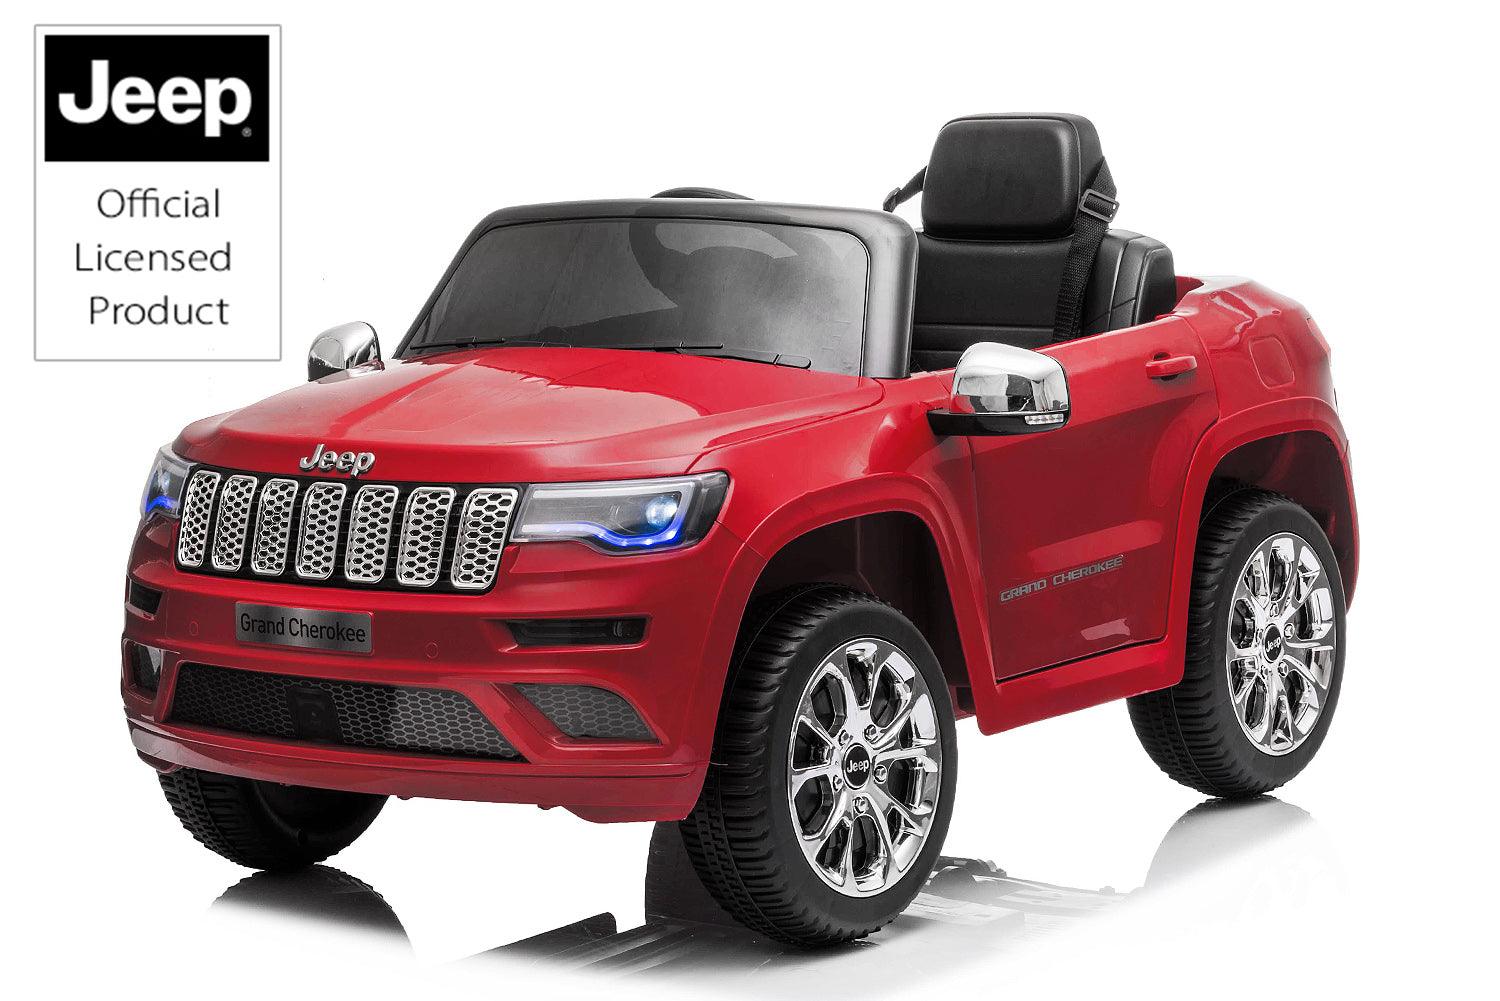 Lizenz Kinder Elektro Auto Jeep Grand Cherokee: Ein kleines Abenteuer für junge Entdecker! - kidsdrive.net - Rideonkidcar - Elektroauto für Kinder - Geschenkidee - Kinderfahrzeug